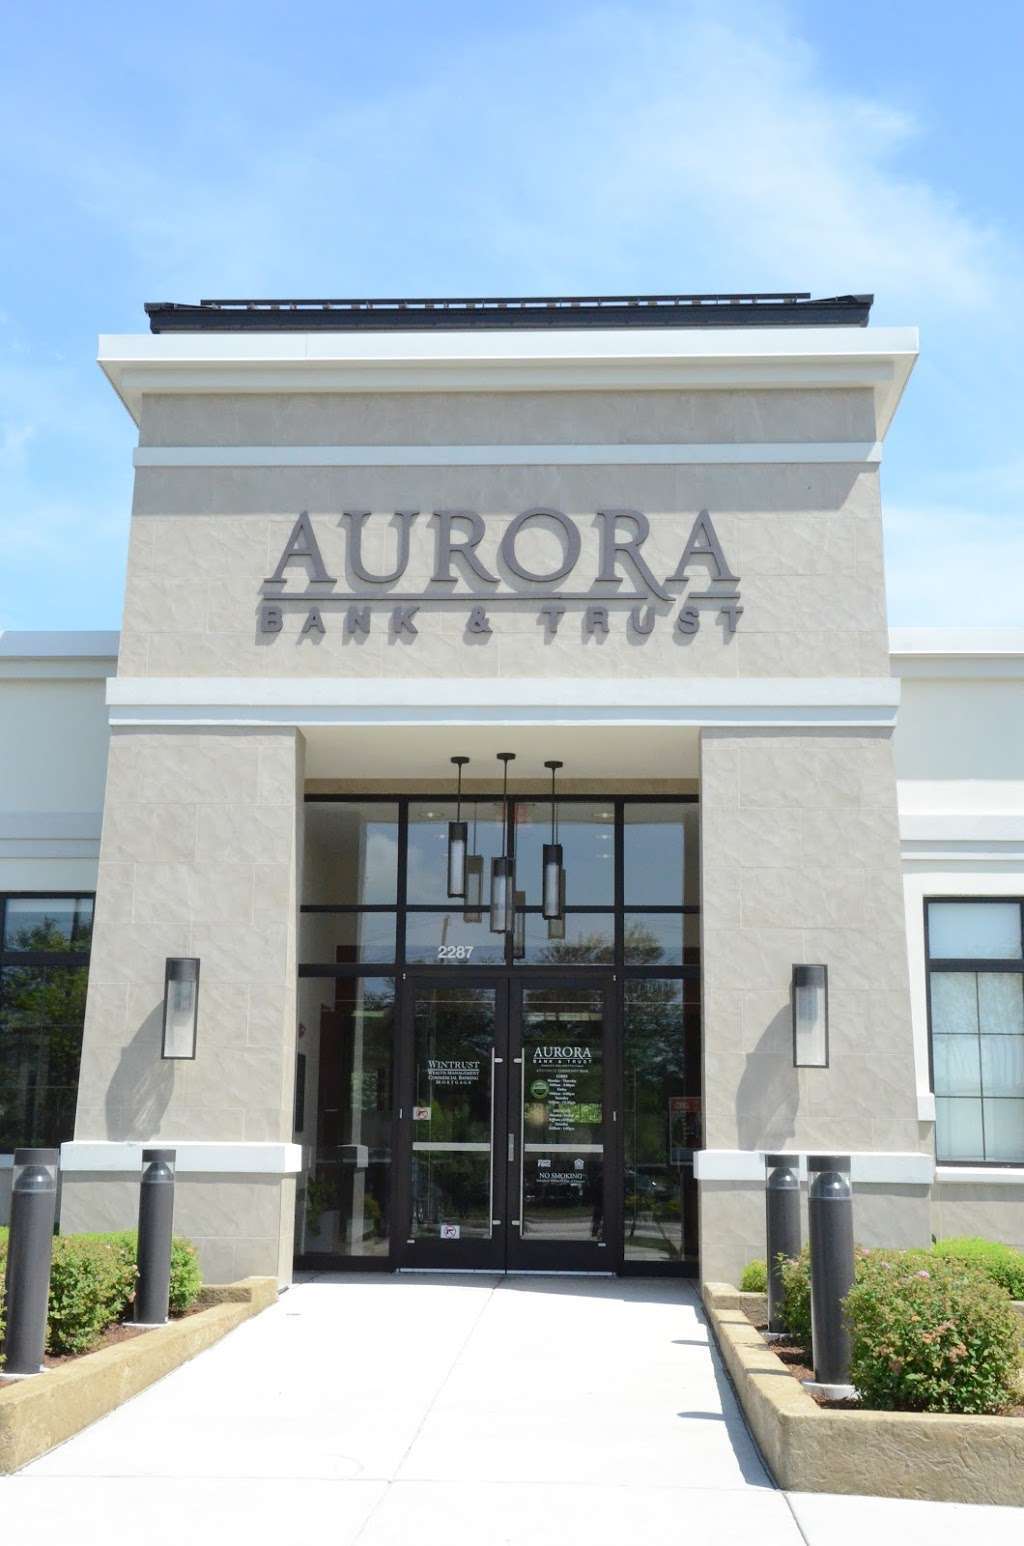 Aurora Bank & Trust | 2287 W Galena Blvd, Aurora, IL 60506 | Phone: (331) 684-9199